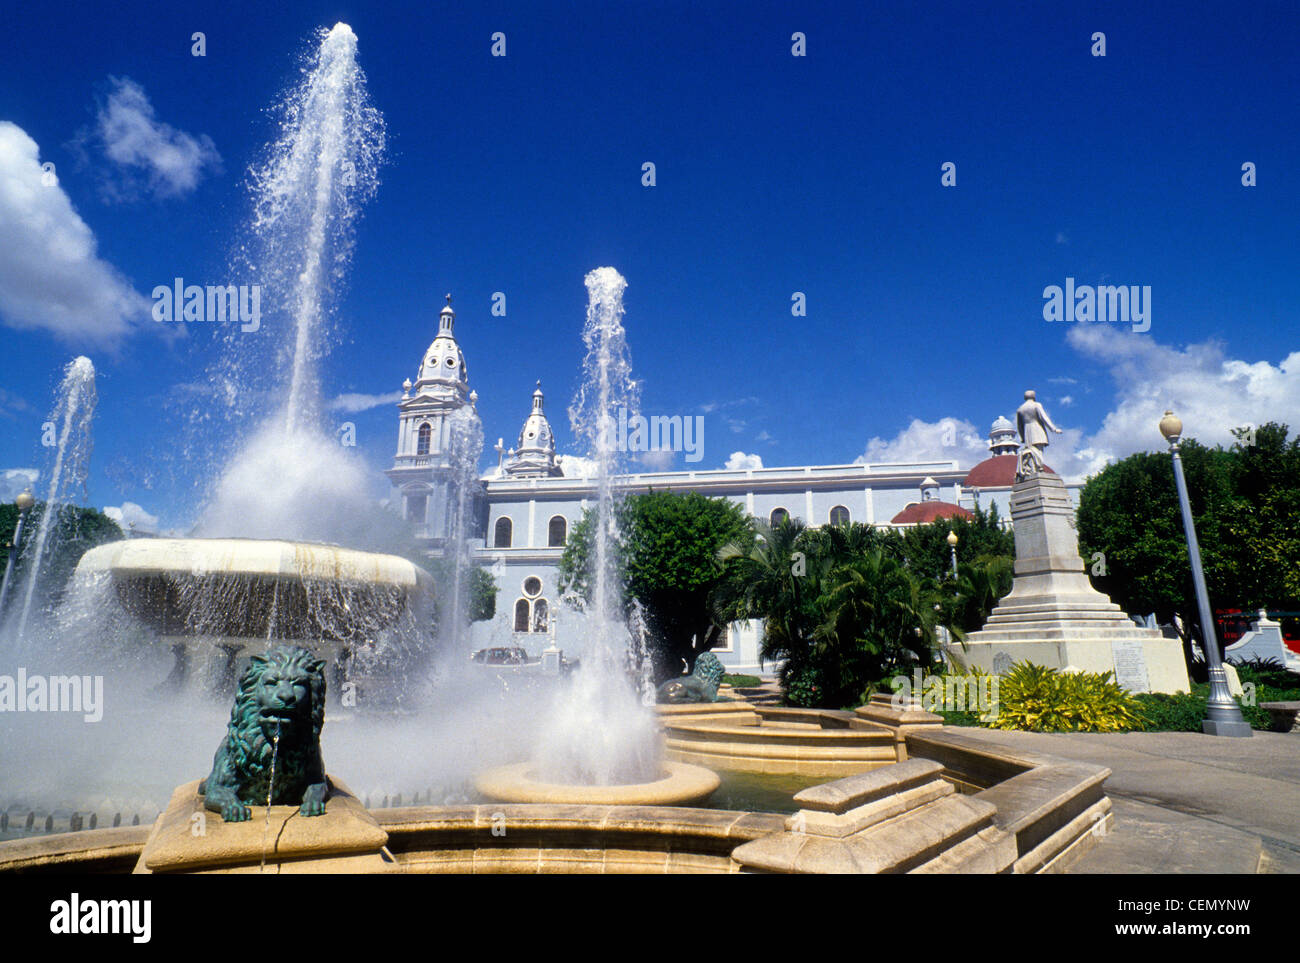 Plaza de Las Delicias est le foyer de la célèbre fontaine aux Lions et la cathédrale de Ponce (arrière) dans le centre-ville de Ponce sur l'île de Porto Rico. Banque D'Images